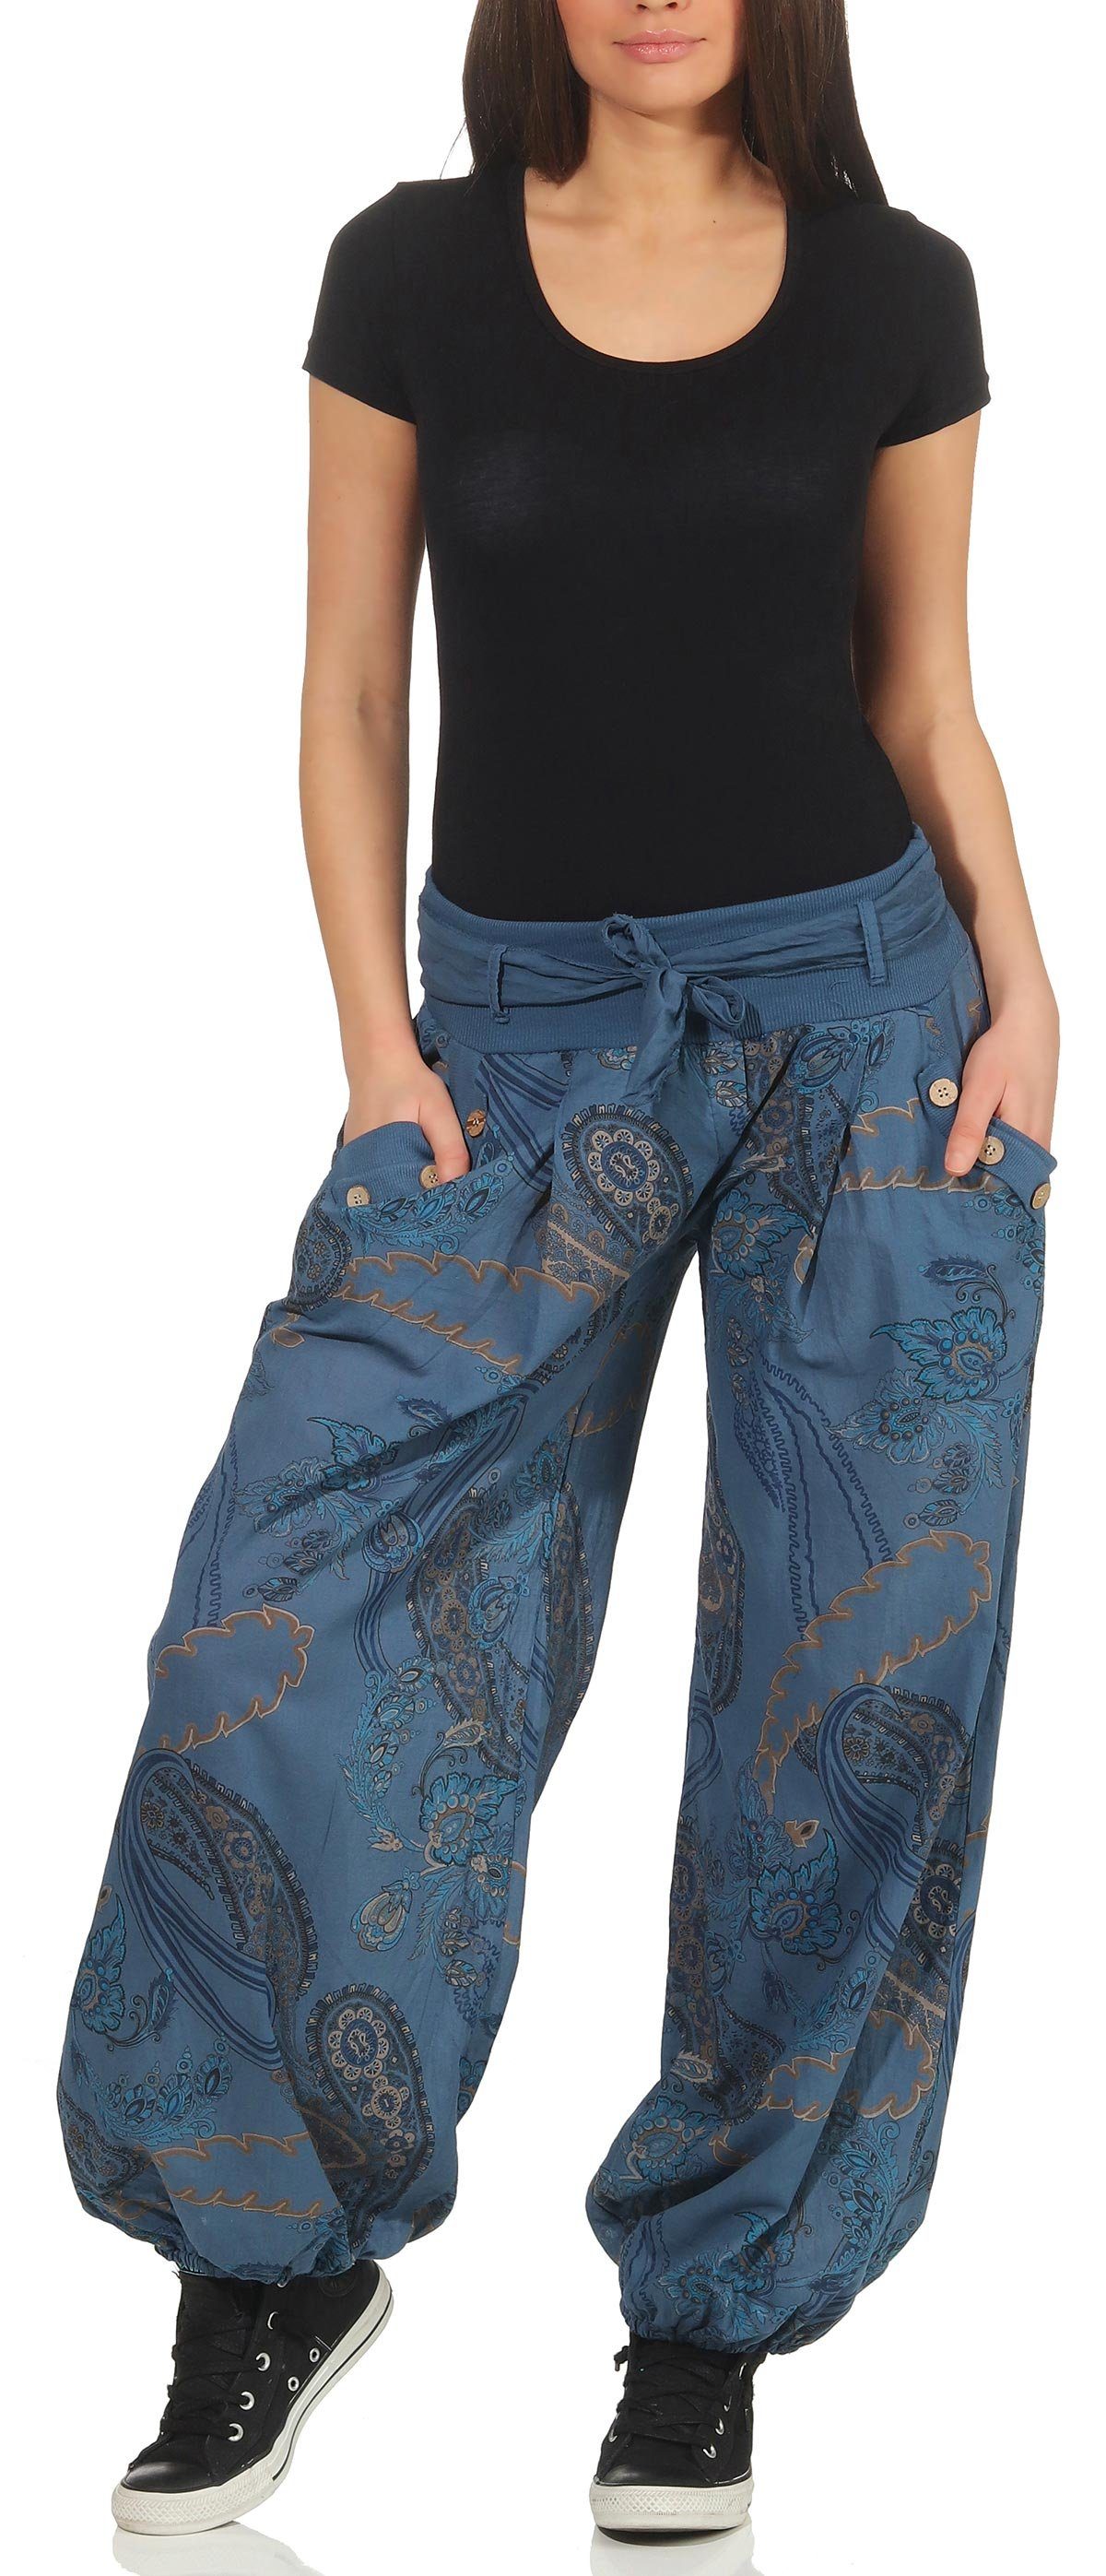 malito more than fashion Haremshose Jerseybund jeansblau mit Hose Einheitsgröße 3485 bequeme elastischem